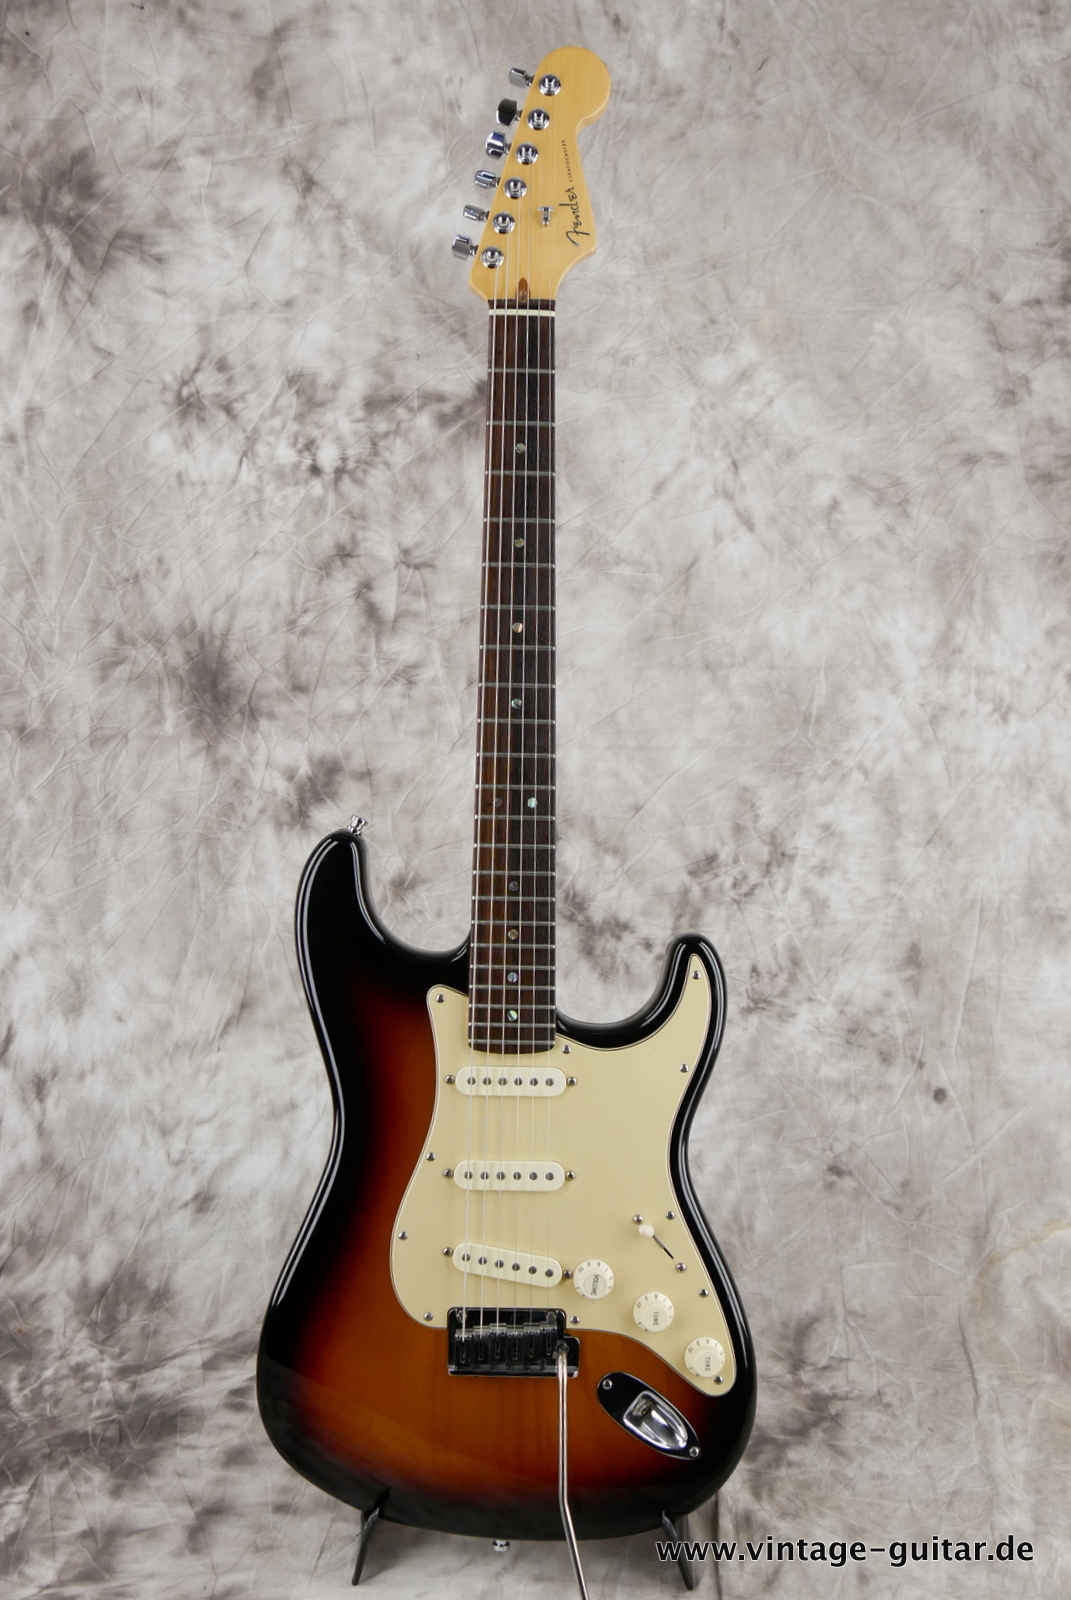 img/vintage/5280/Fender_Startocaster_American_Deluxe_sunburst_samarium-cobalt-noiseless_tremolo_2005-001.JPG